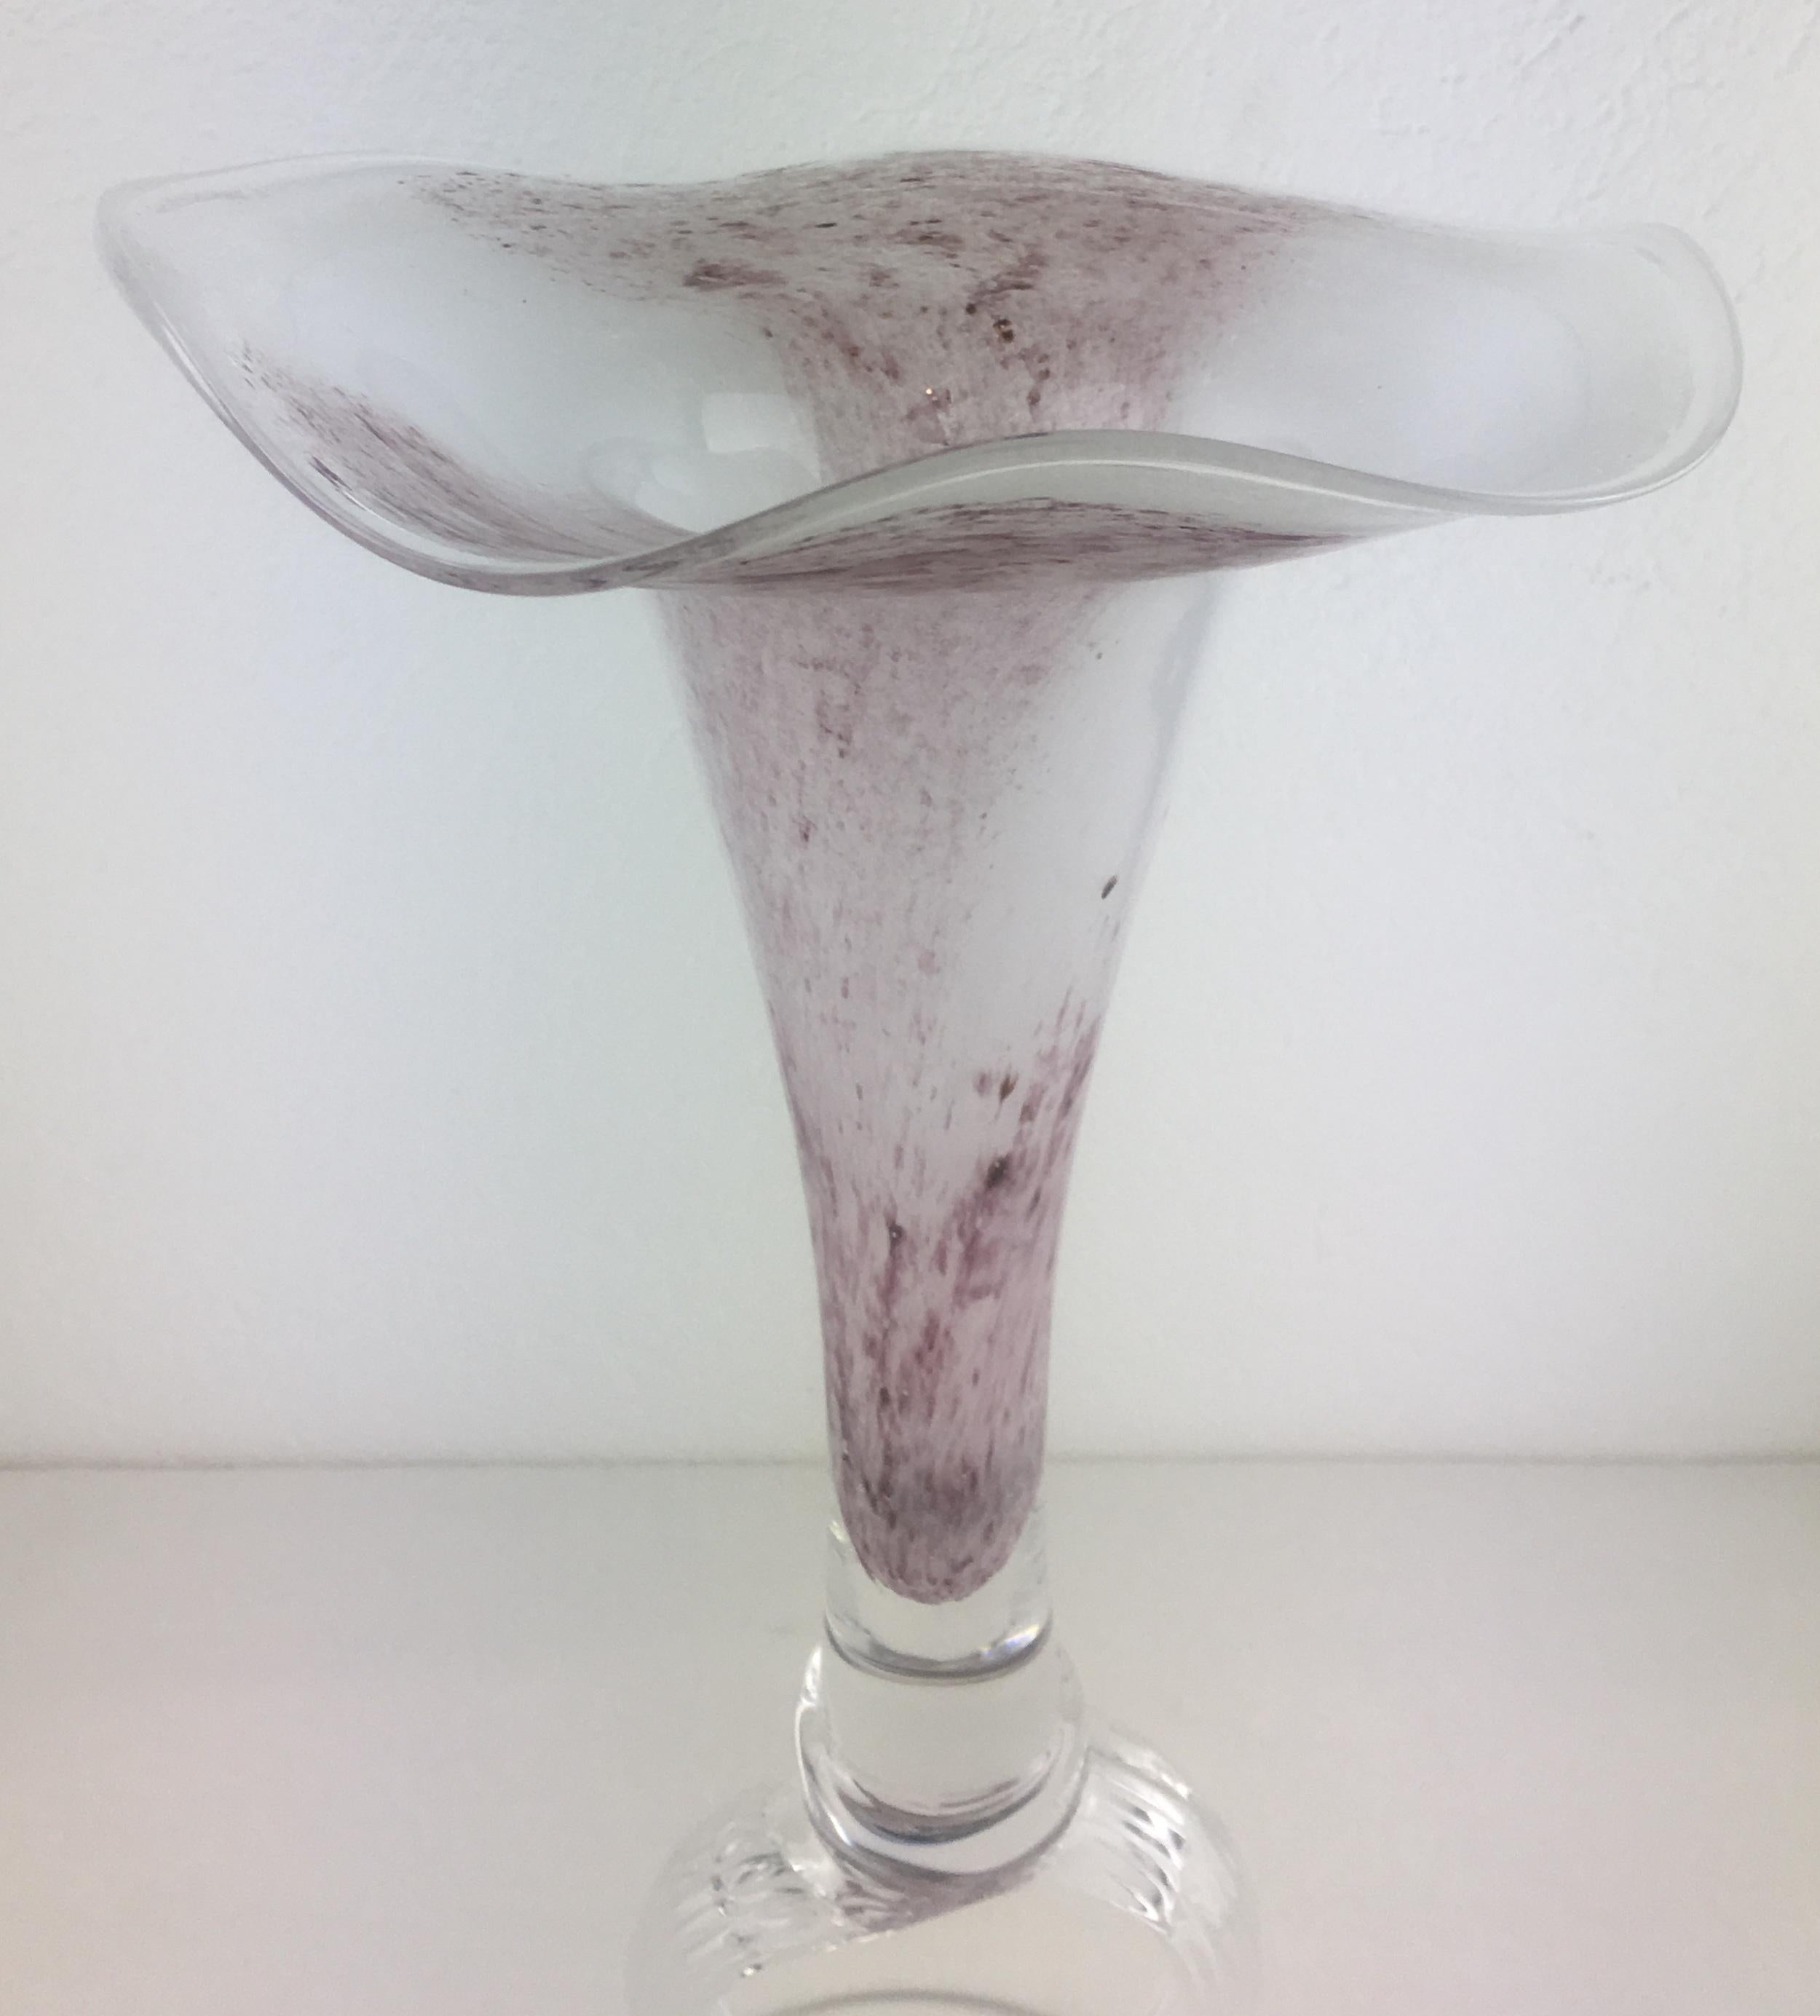 Un centre de table très décoratif ou Epergne (prononcer E-purn) fabriqué à la main à Biot, en France. Magnifique et rarement trouvé dans cette couleur rose et claire frappante, le verre d'art soufflé à la main avec la signature de la base à bulles